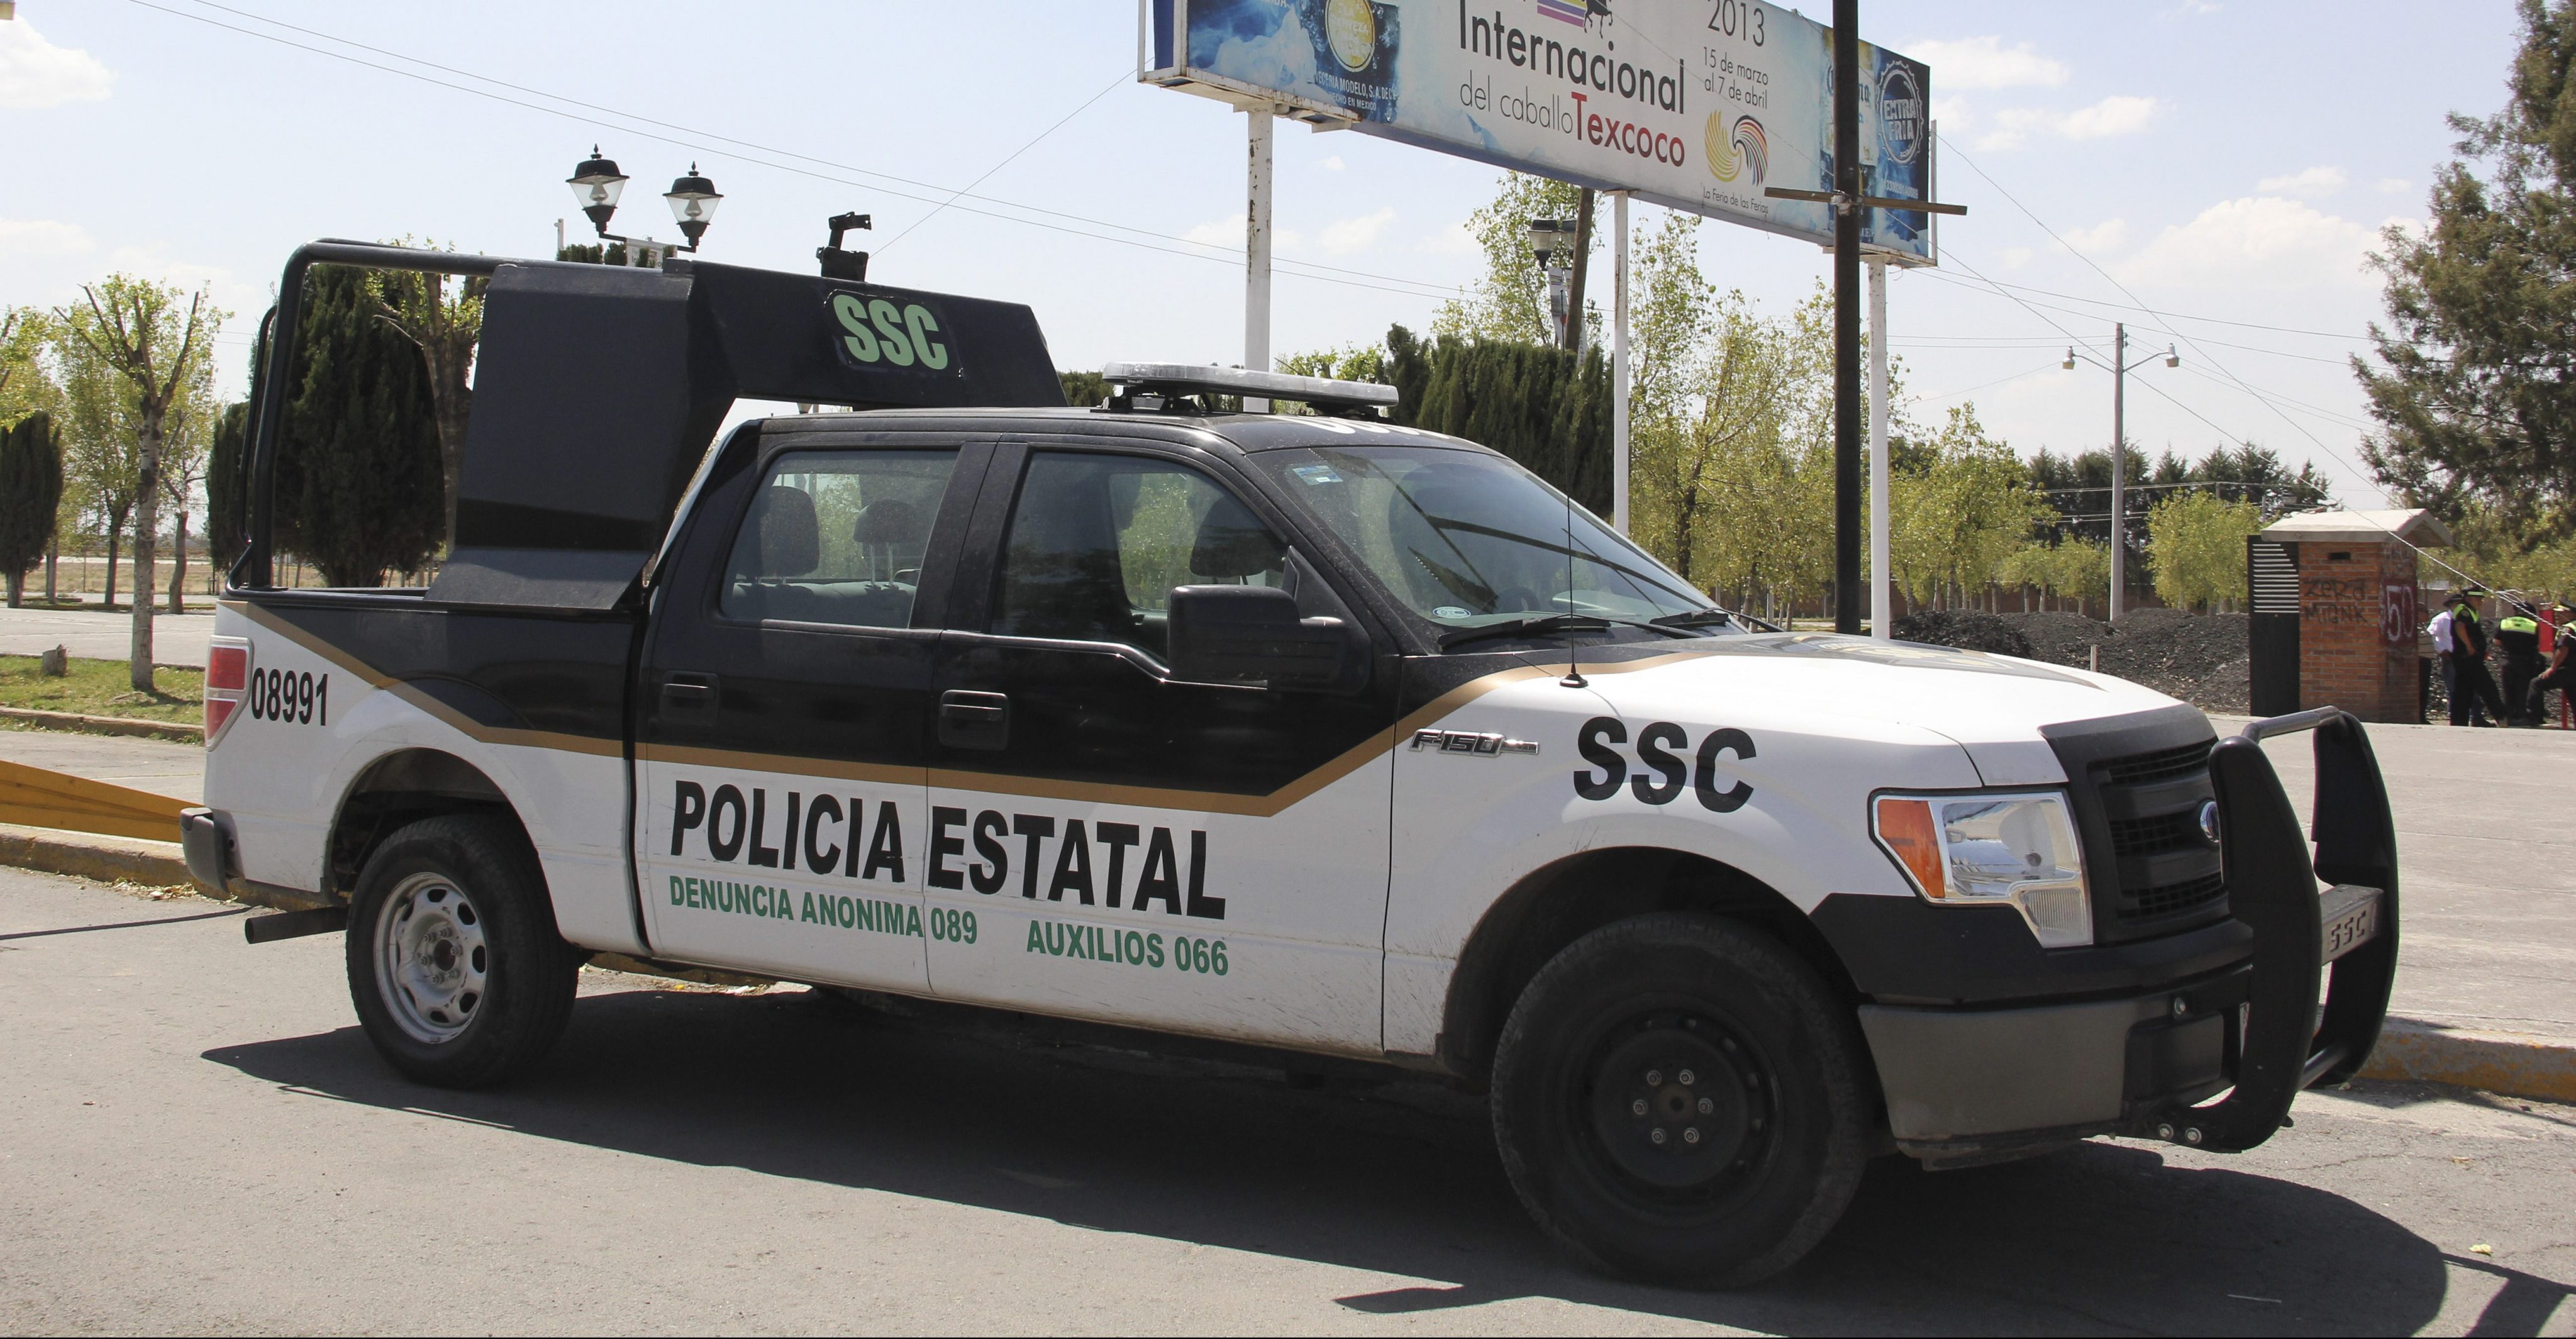 Presuntos delincuentes y policías se enfrentan en Texoco, hay 4 muertos